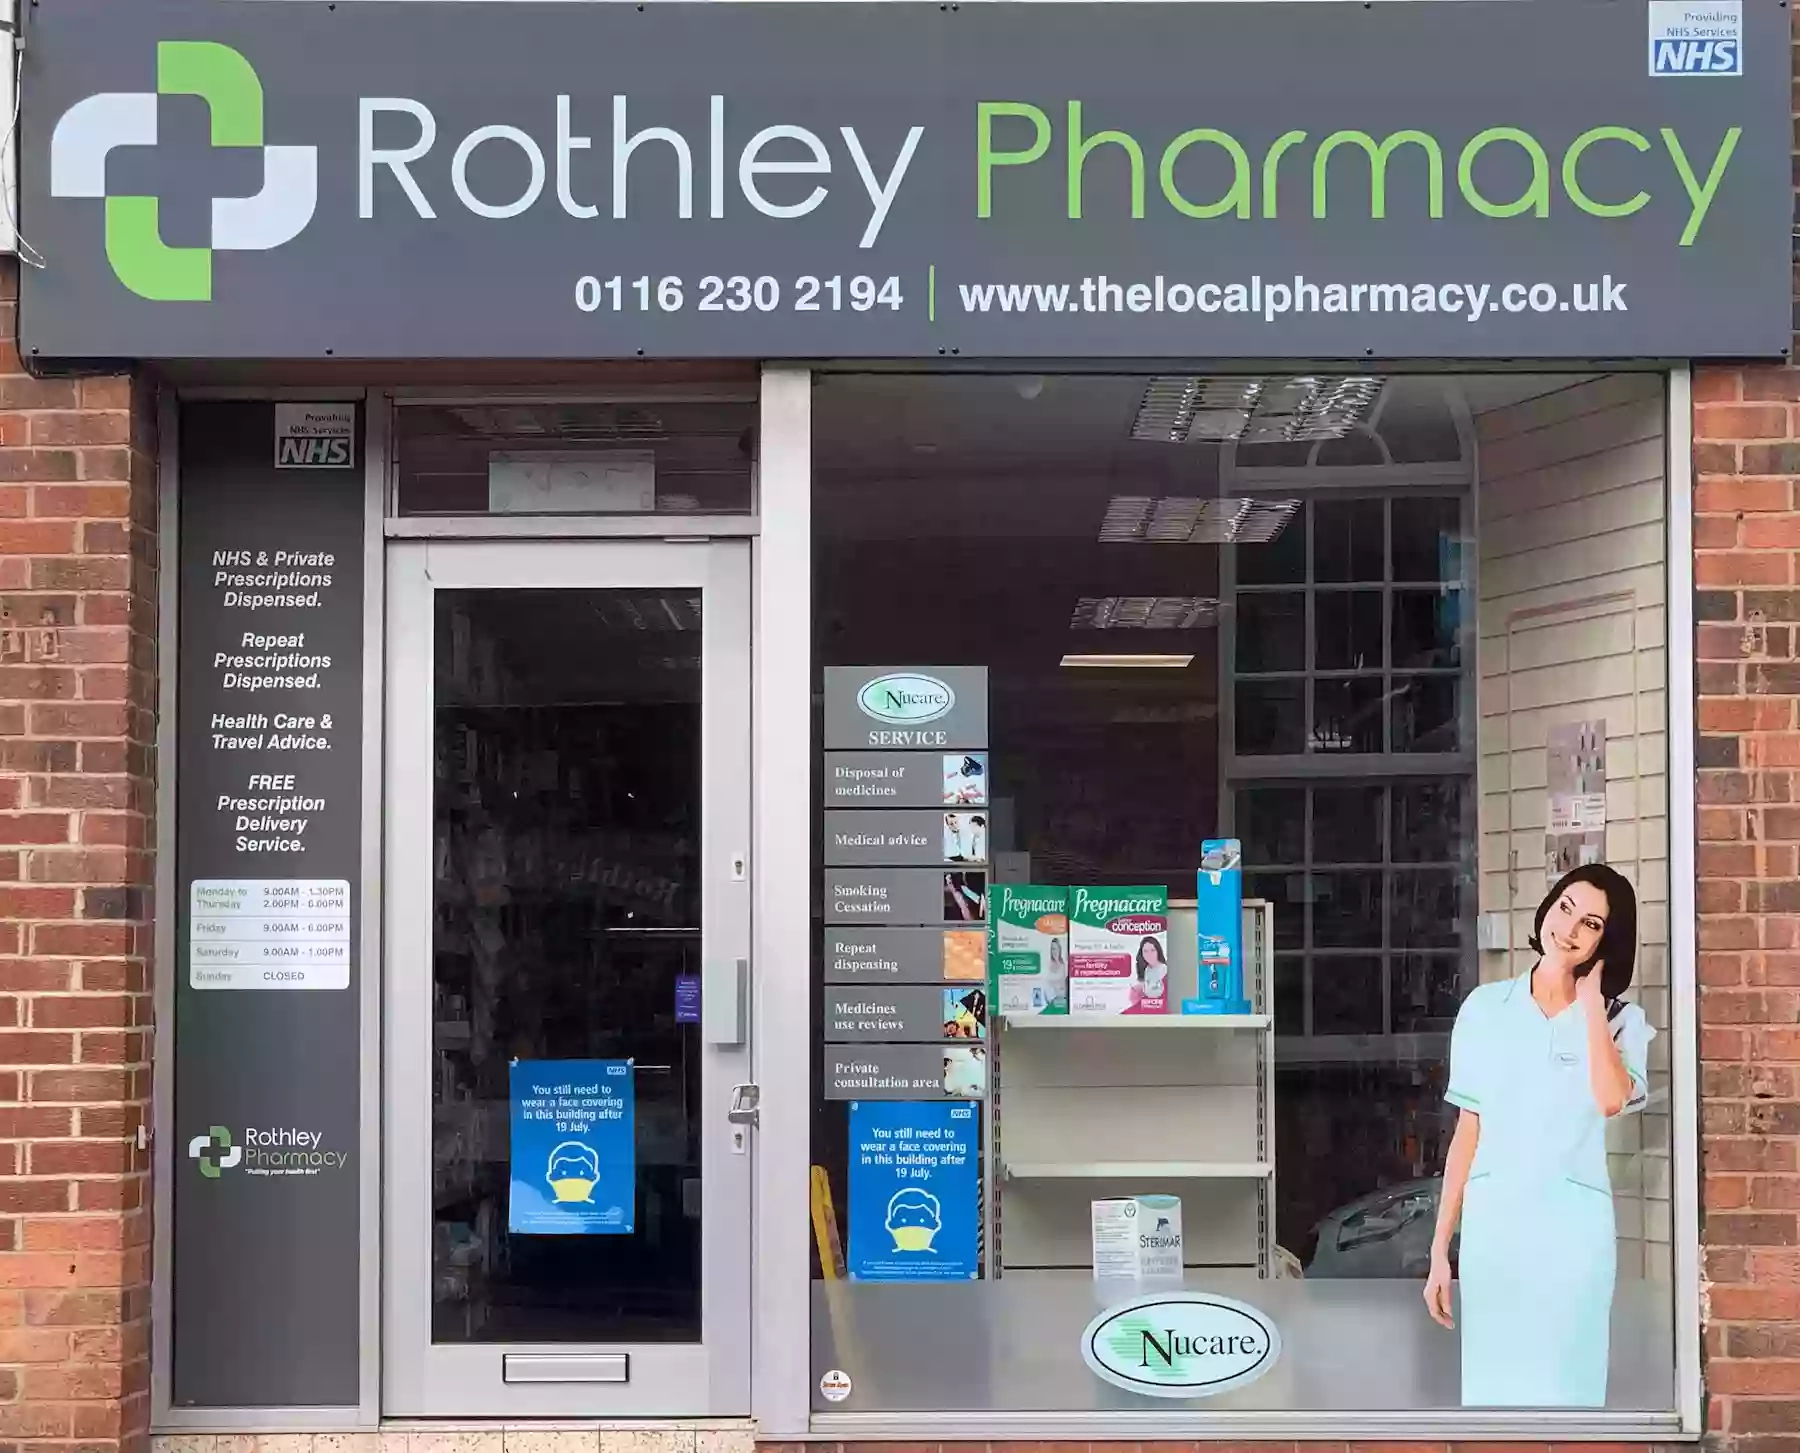 Rothley Pharmacy